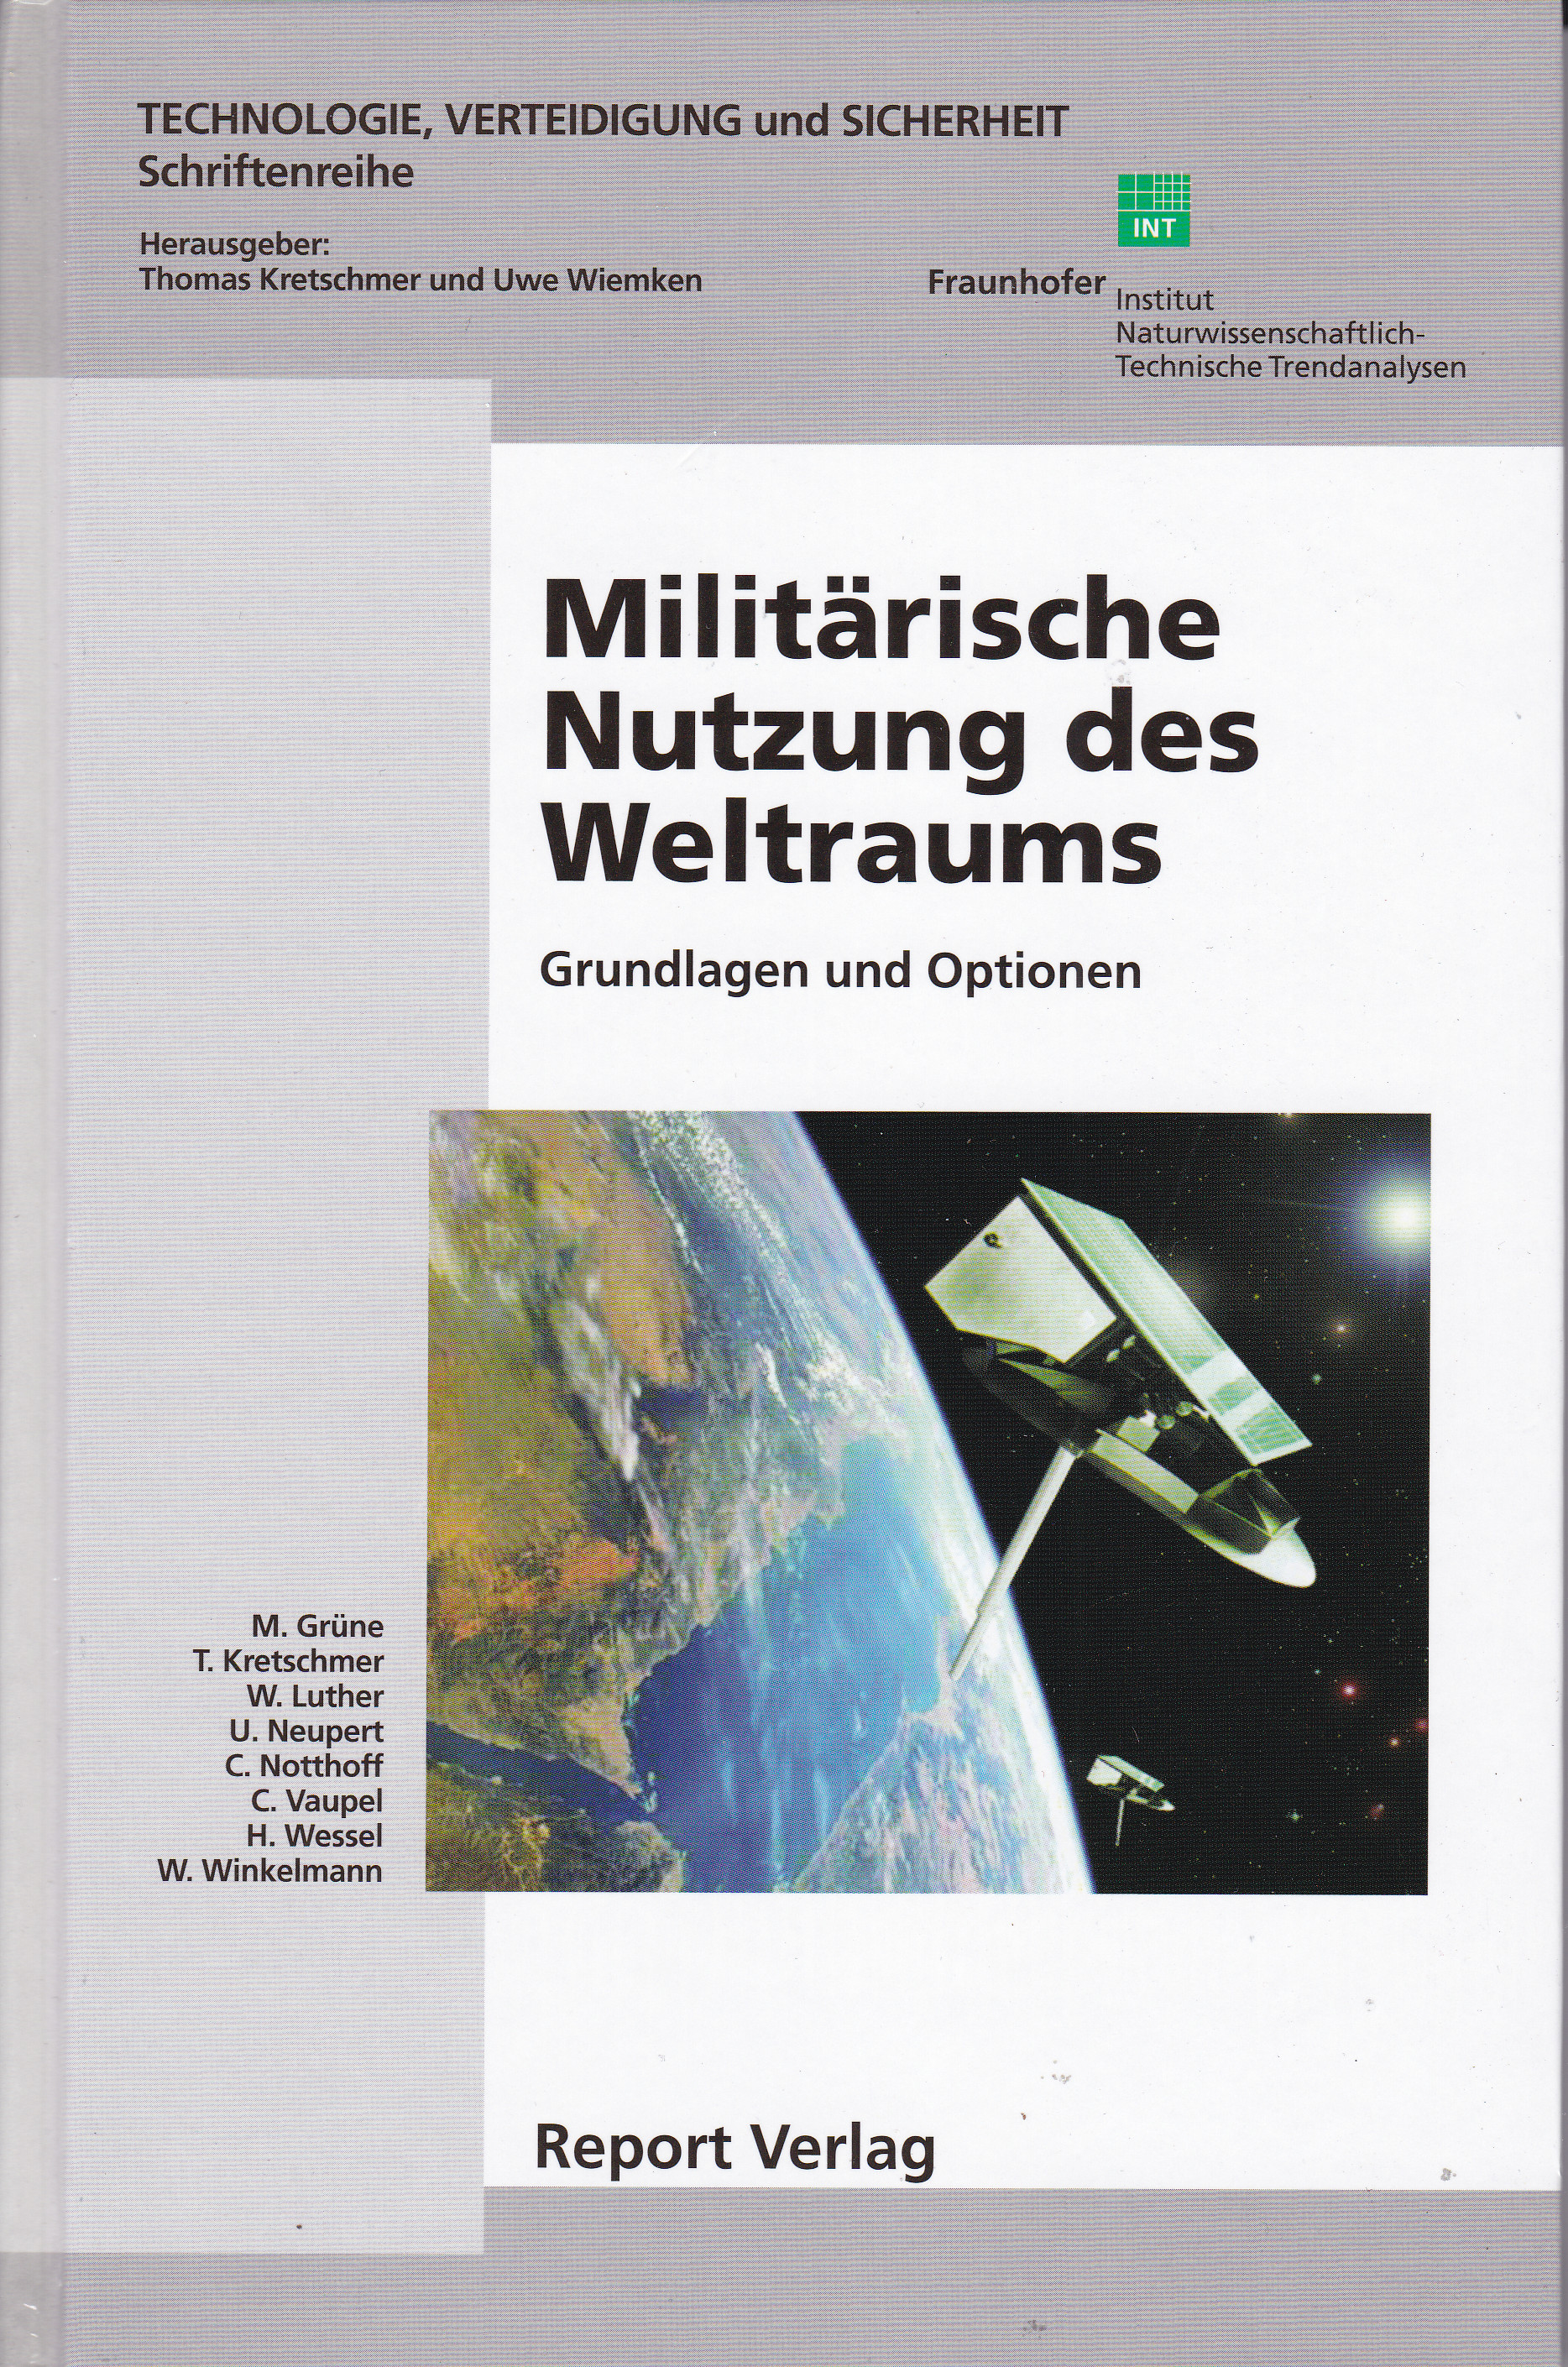 Militärische Nutzung des Weltraums - Grundlagen und Optionen - Kretschmer, Thomas; Uwe Wiemken